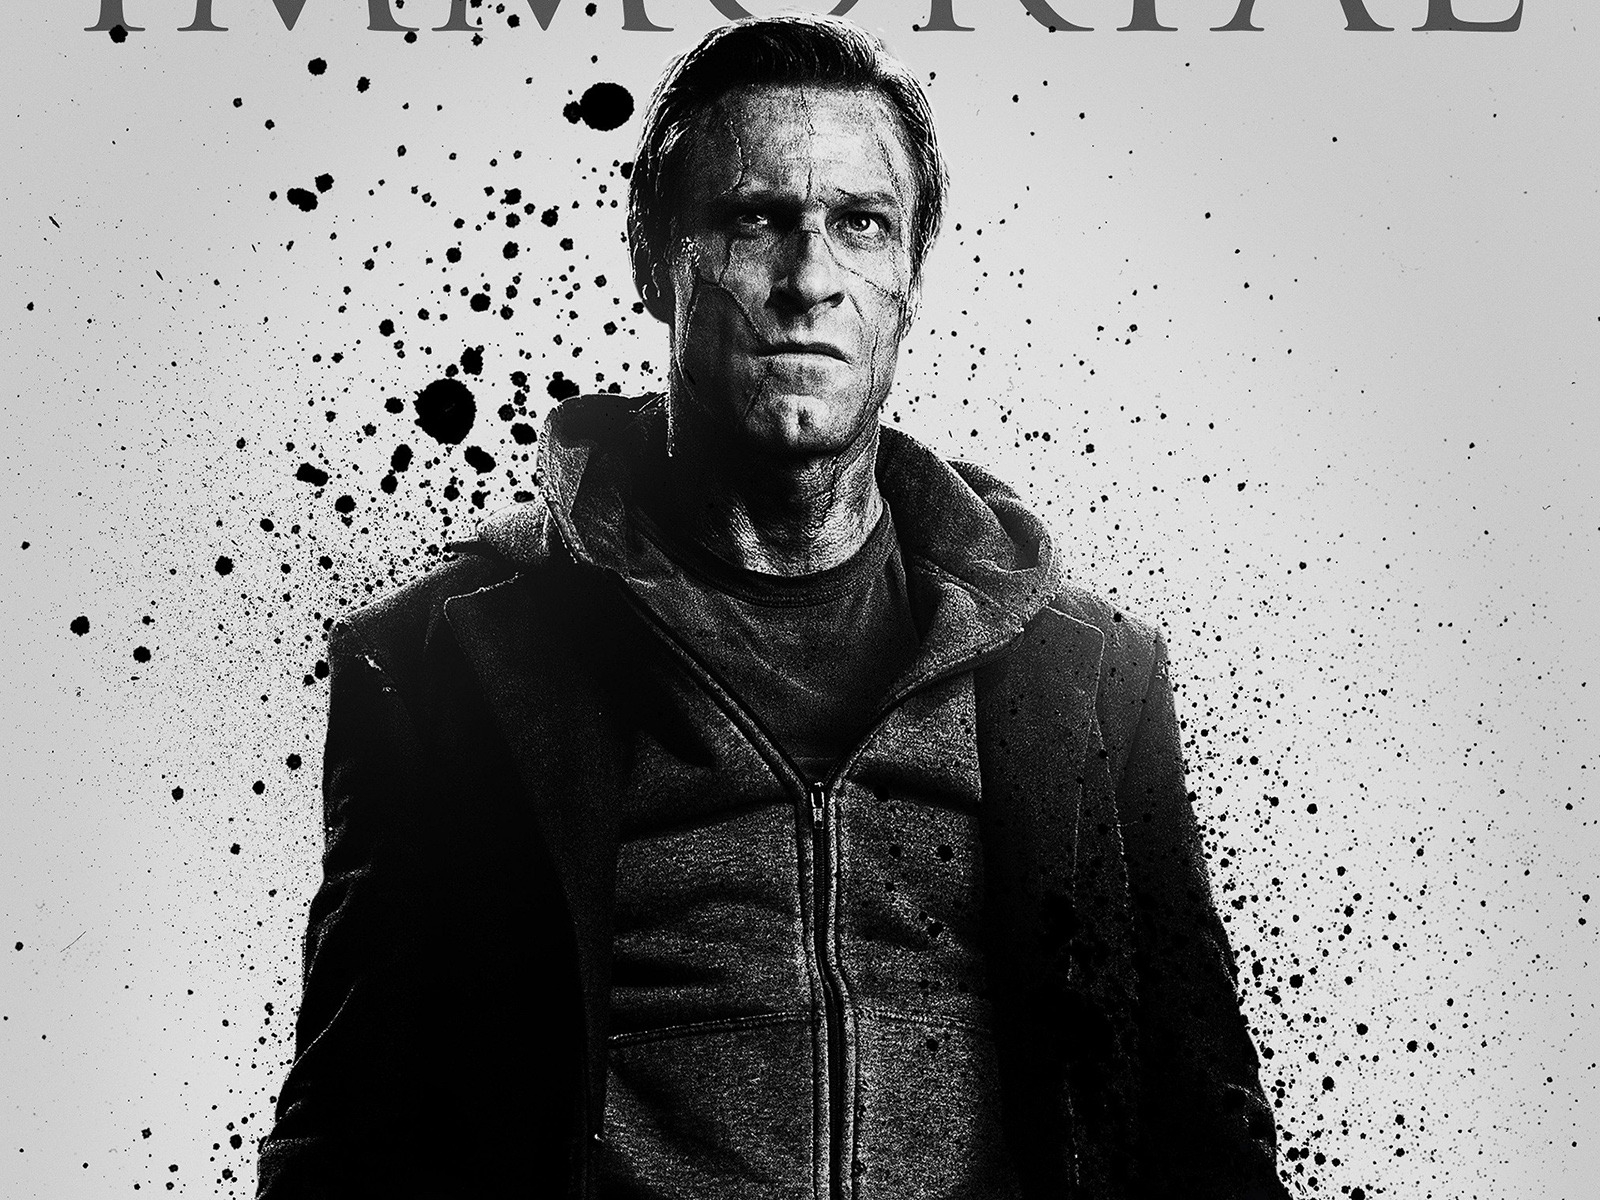 I Frankenstein 2014 Movie for 1600 x 1200 resolution